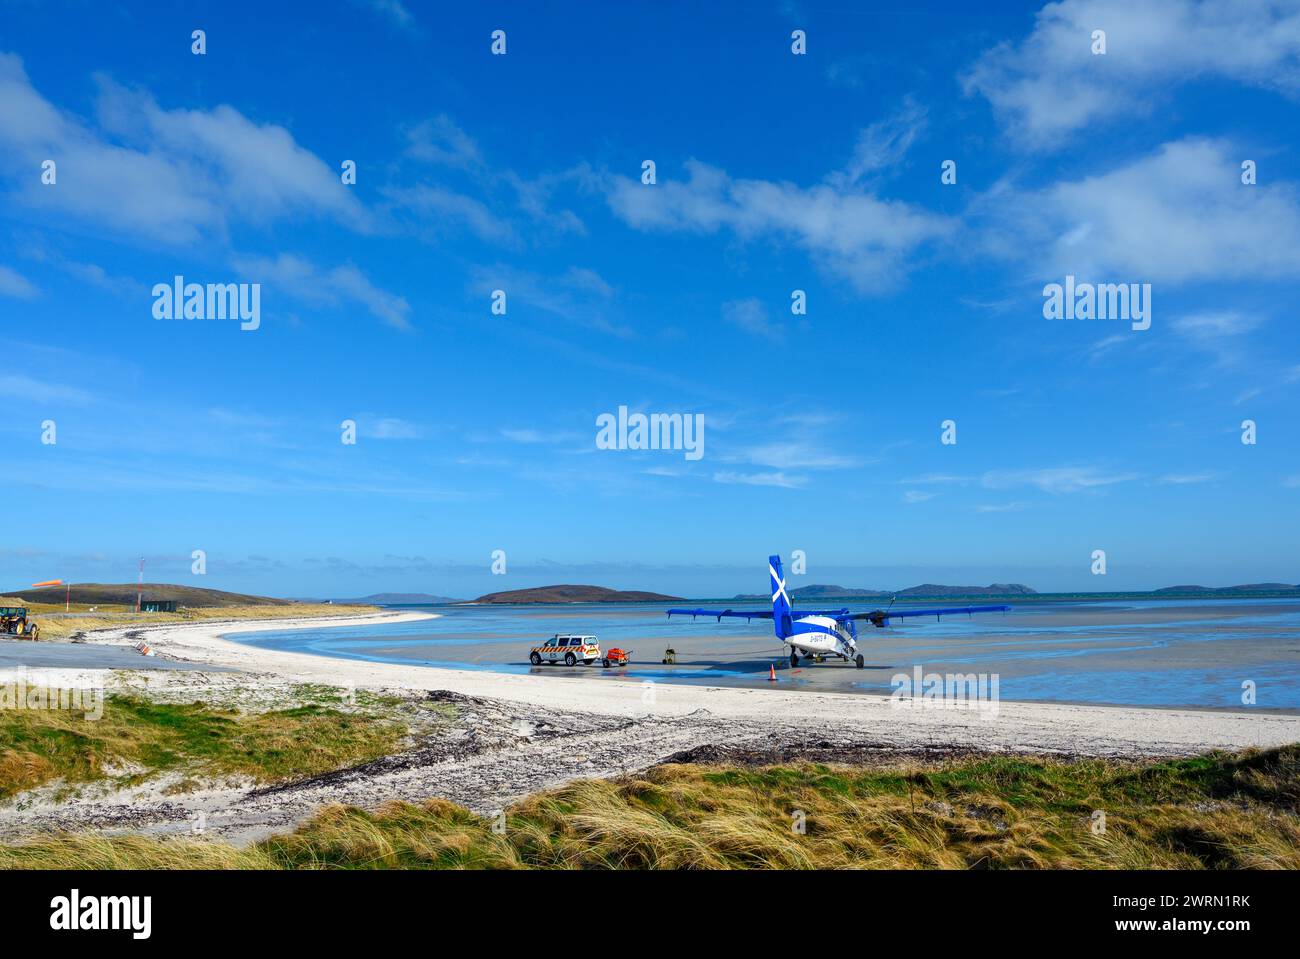 Aereo sulla sabbia all'aeroporto barra, Isola di barra, Ebridi esterne, Scozia, Regno Unito Foto Stock